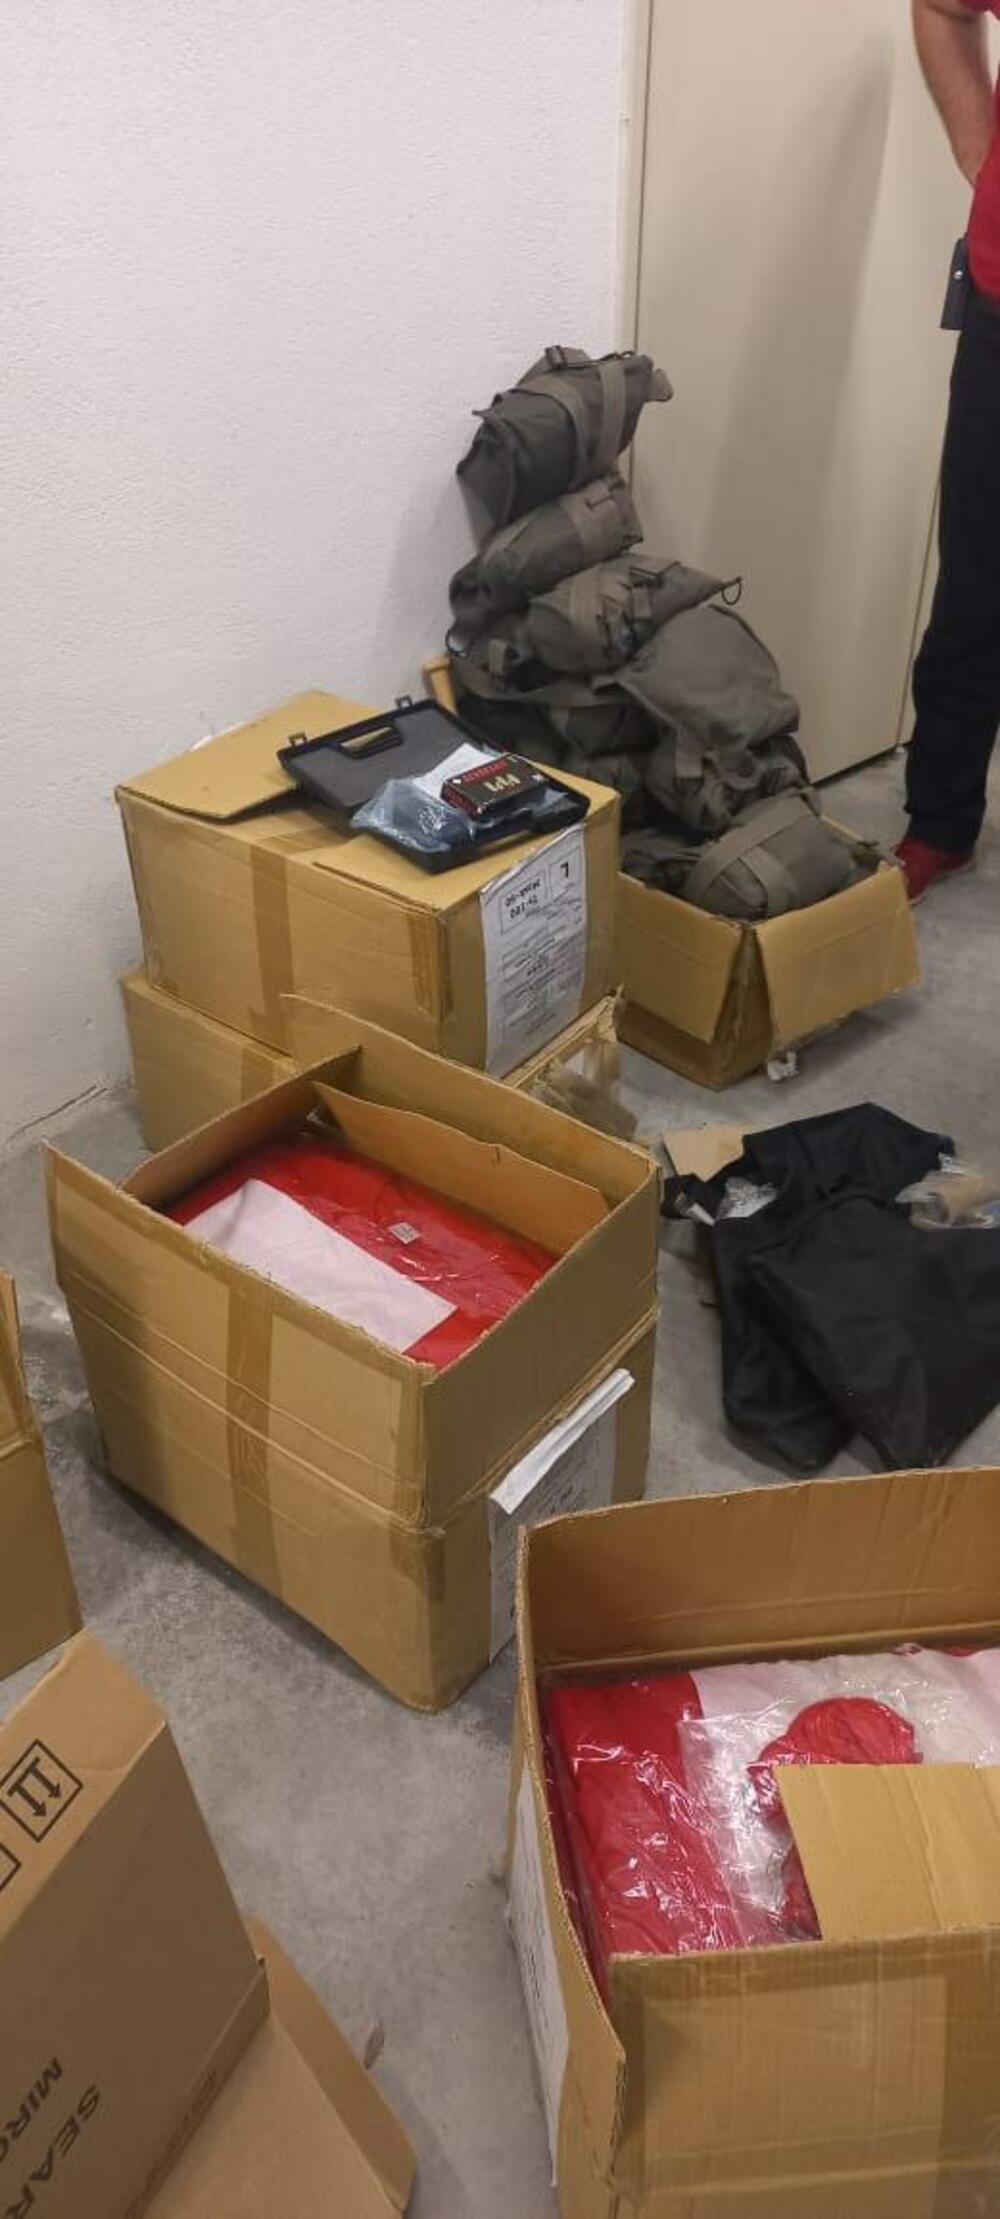 <p>Paketi sa opremom pronađeni su nakon što je Uprava policije (UP) krenula u pregled te zgrade i hotela "Podgorica", a nakon što je tokom dana telefonom dojavljeno da je navodno postavljena eksplozivna naprava</p>